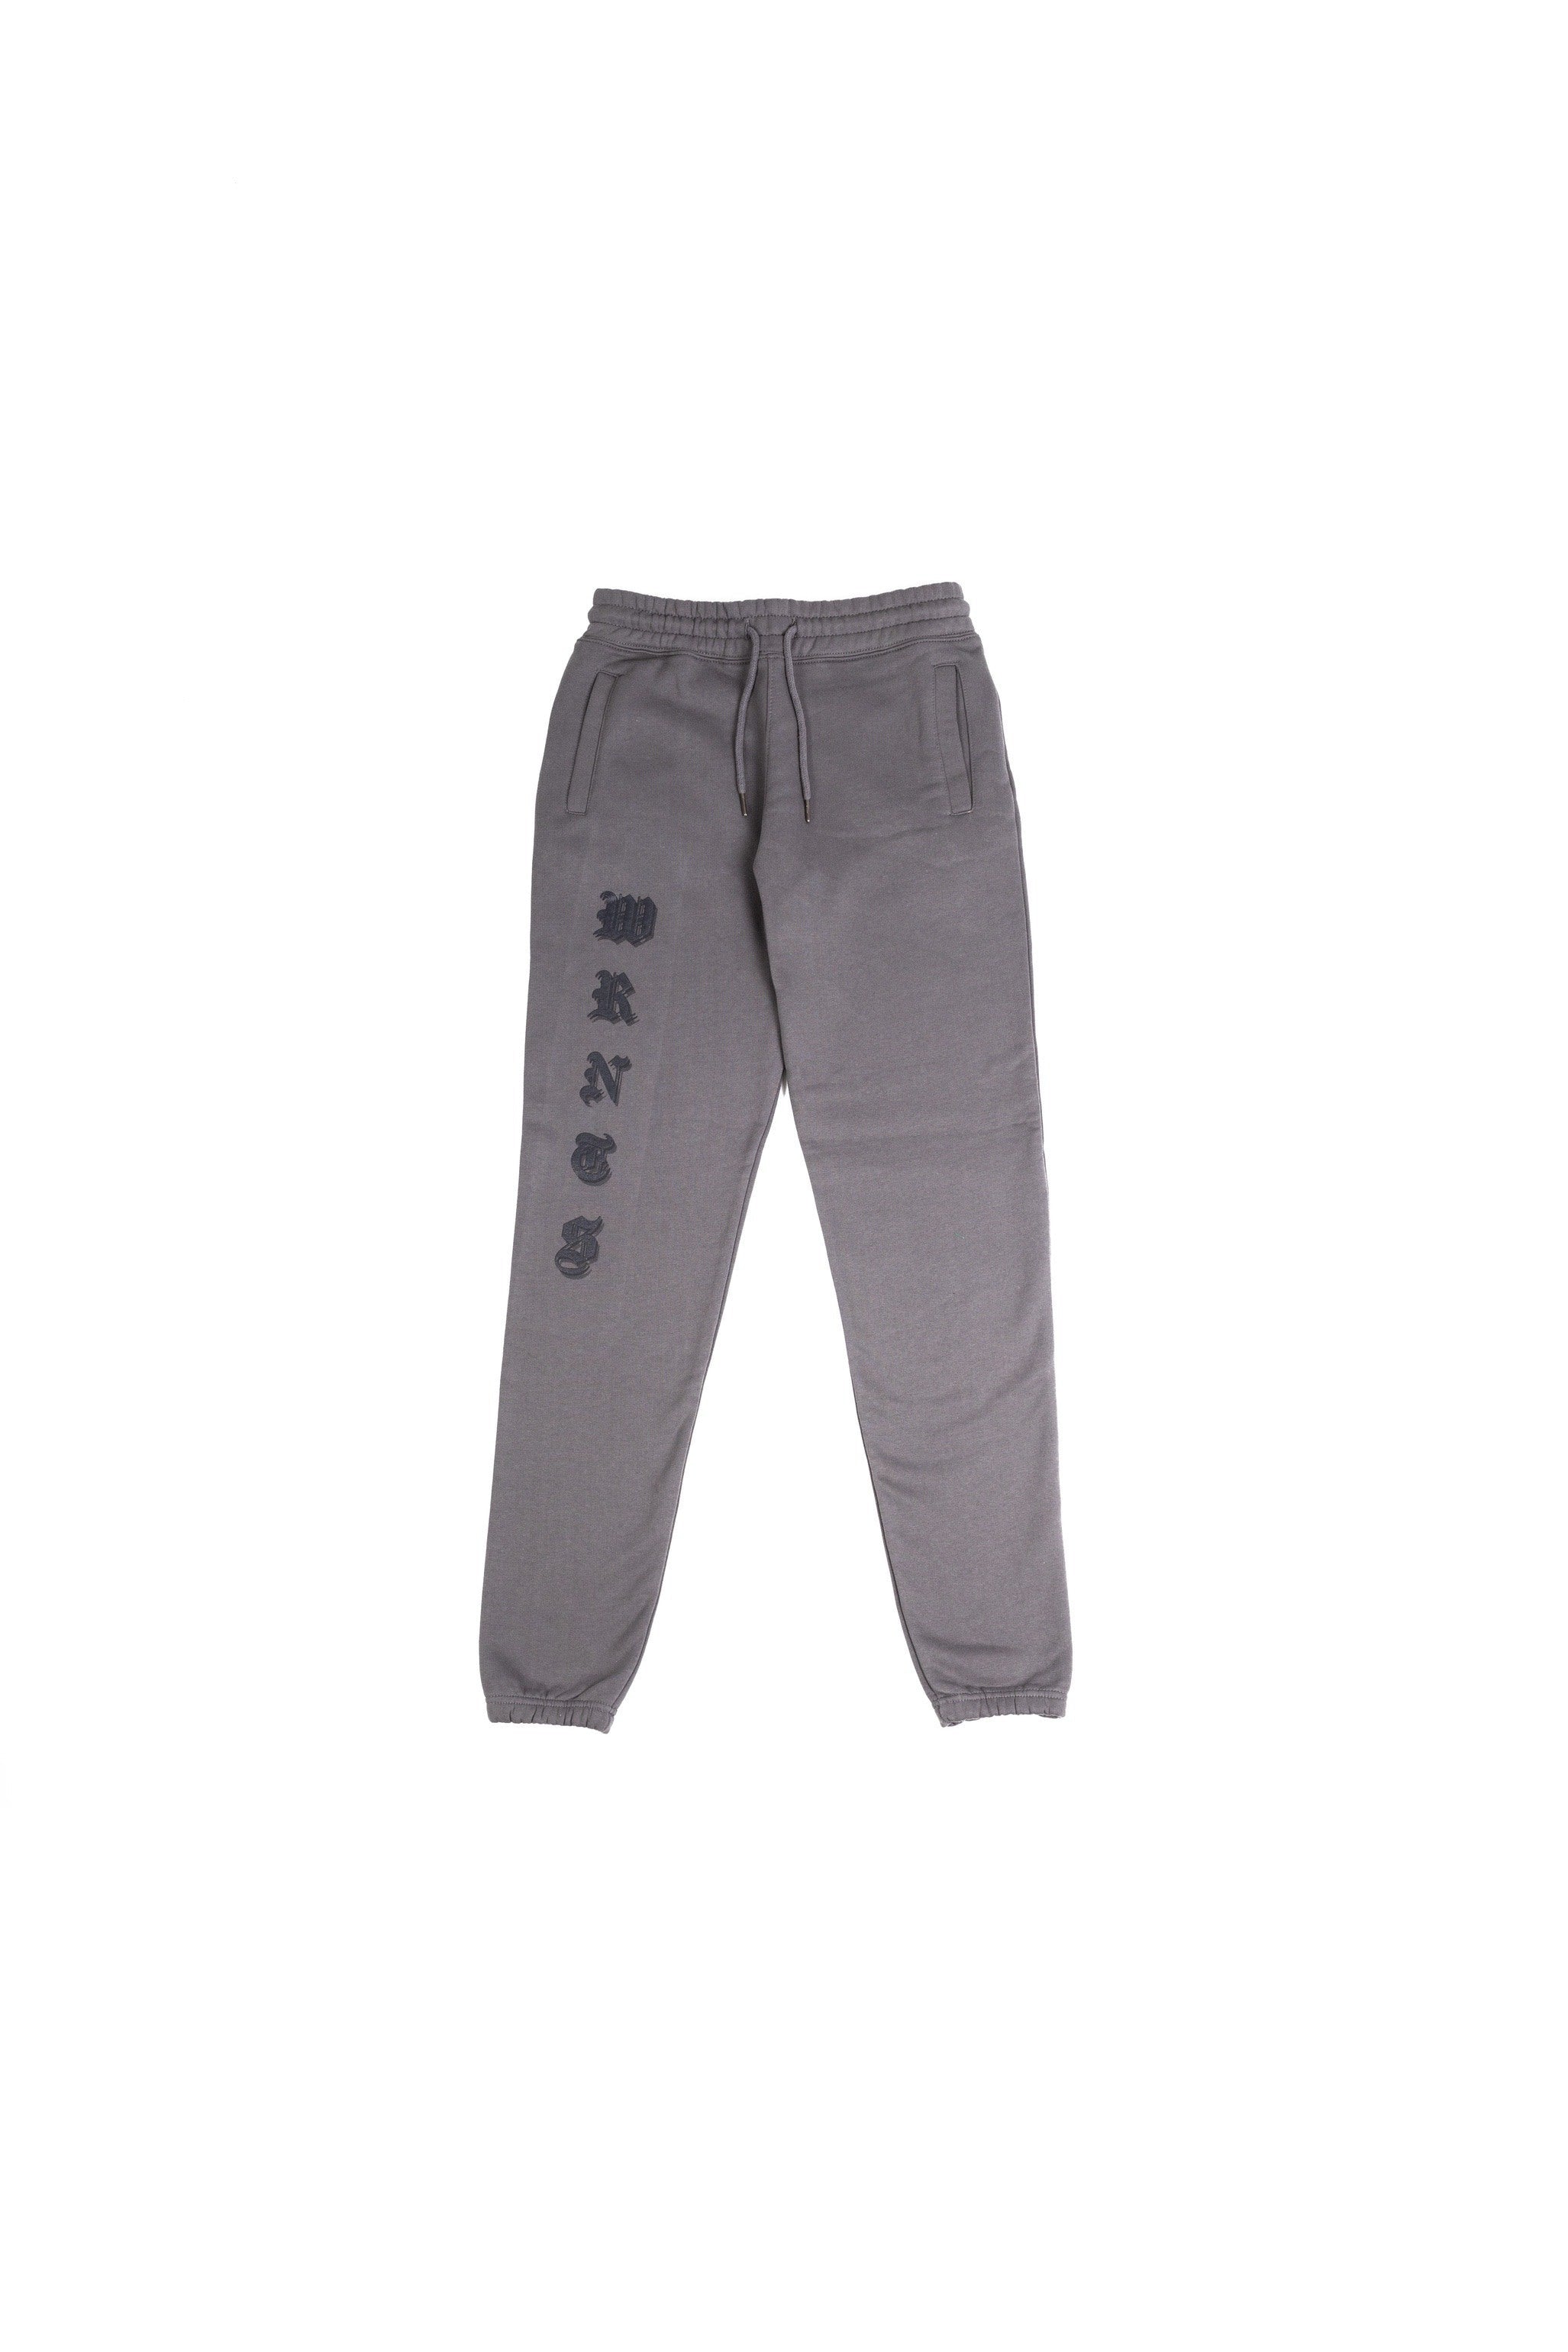 wrnts sweats in grey - Different Streetwear